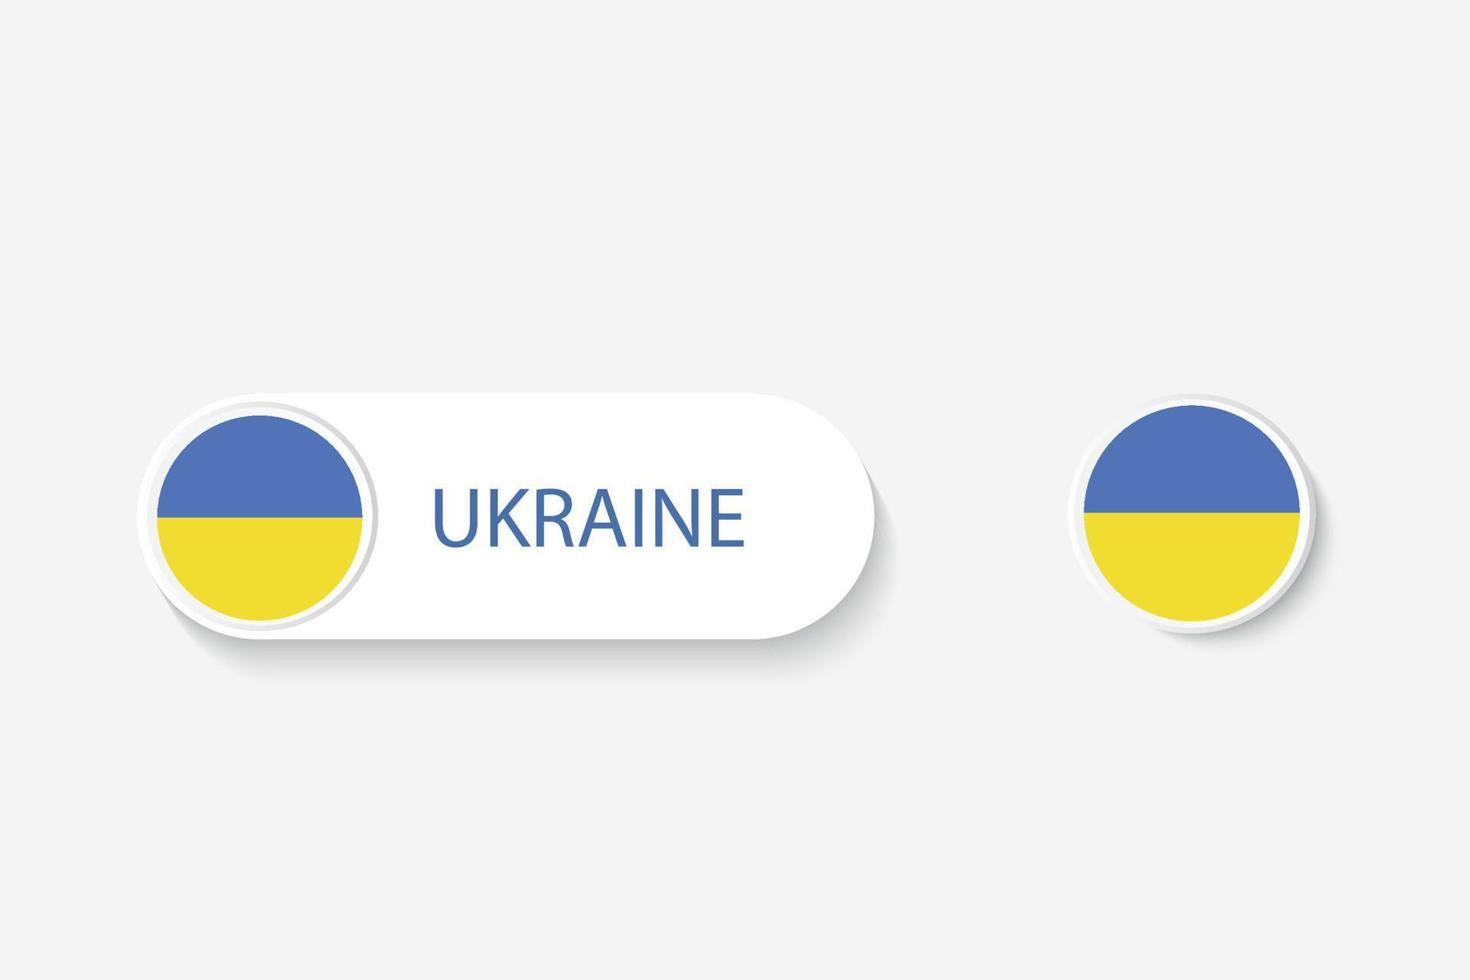 bandiera del pulsante dell'ucraina nell'illustrazione di forma ovale con la parola dell'ucraina. e pulsante bandiera ucraina. vettore